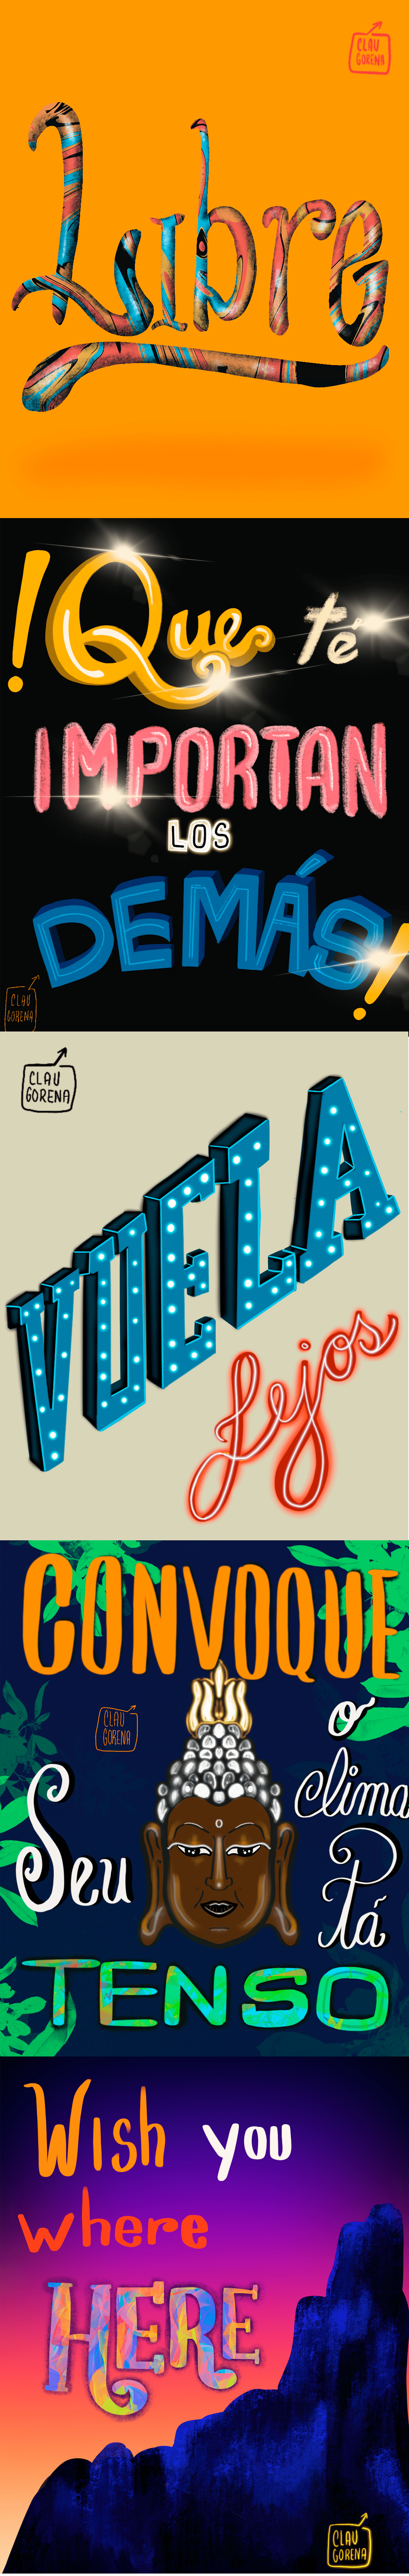 lettering bolivia graphicdesign iPad letras procreatelettering